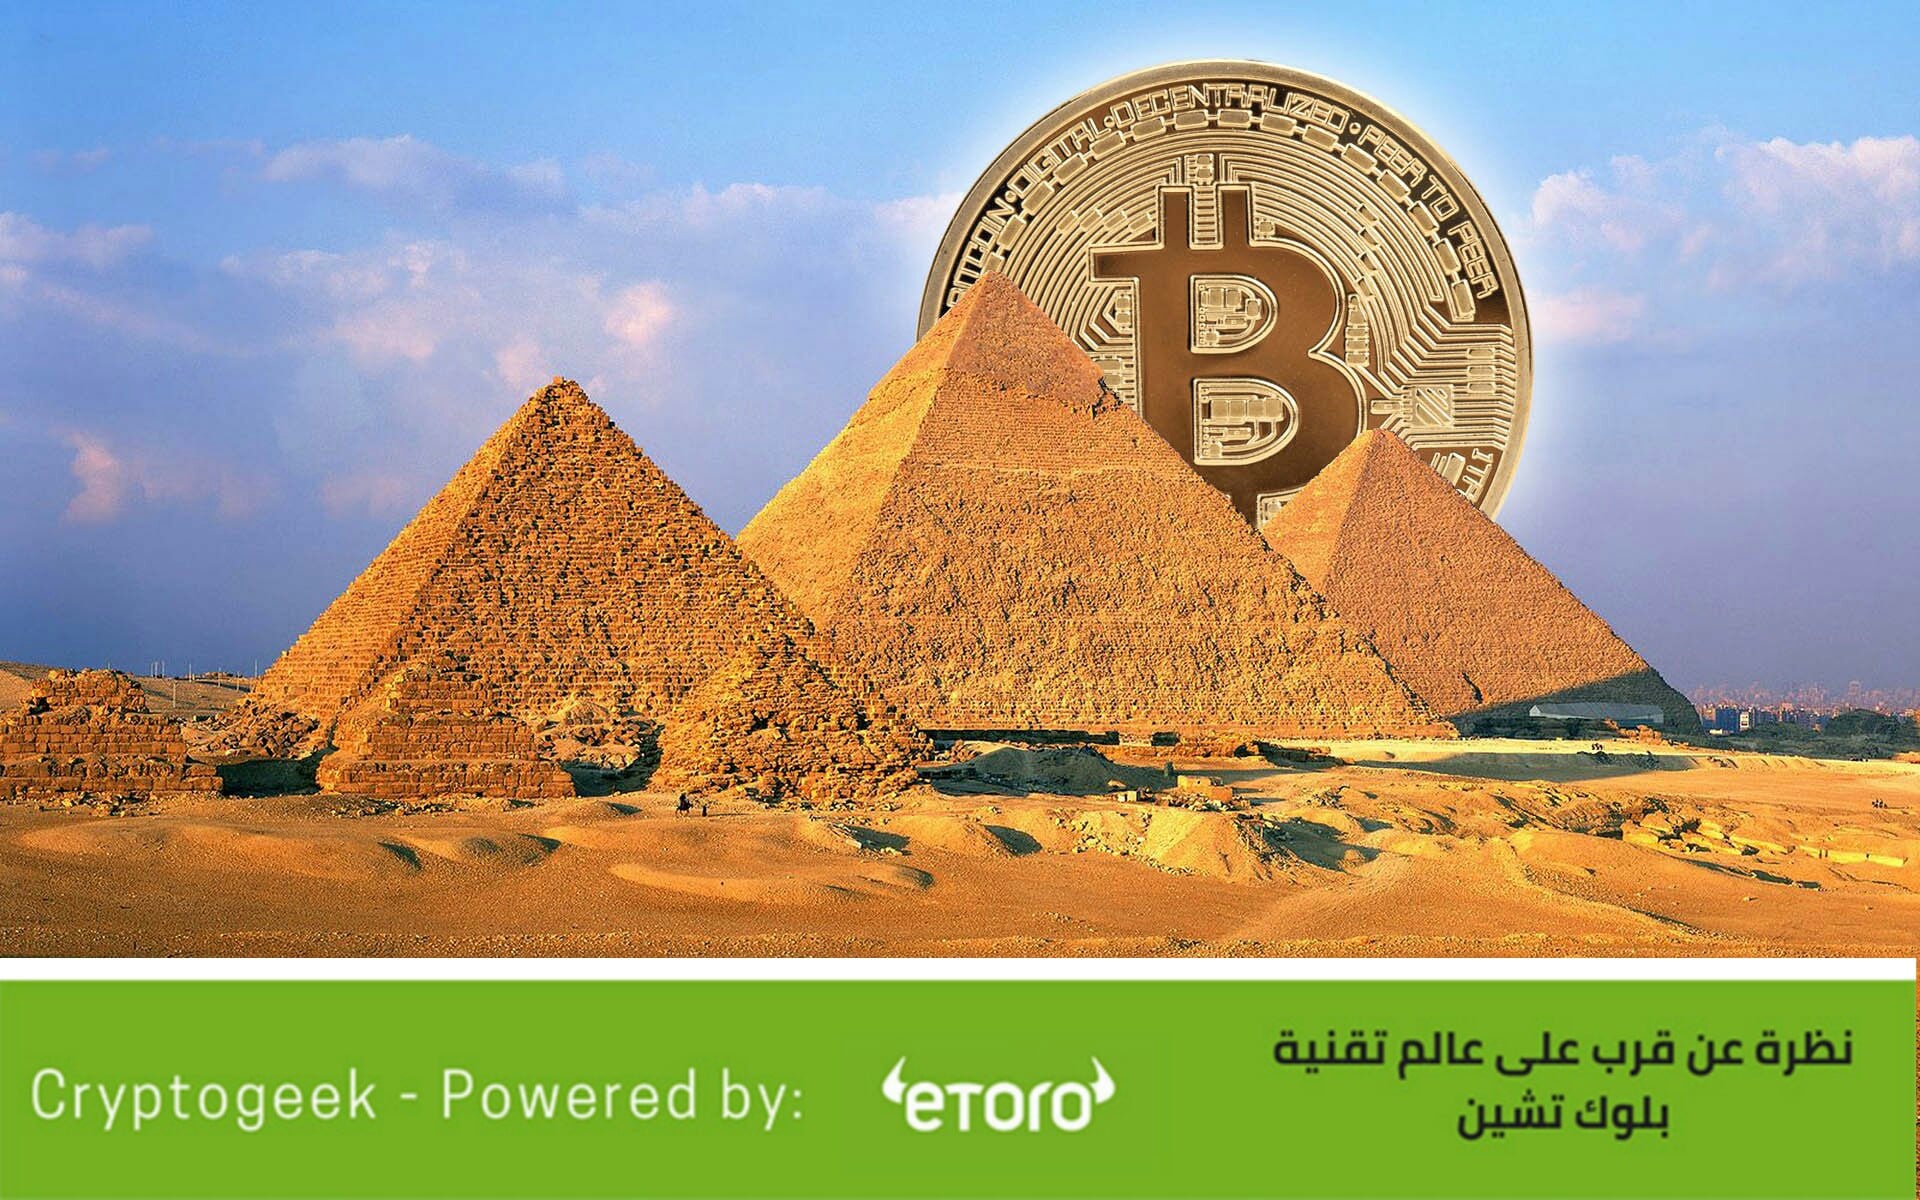 هل تداول وتعدين العملات الرقمية قانوني ومسموح في مصر؟